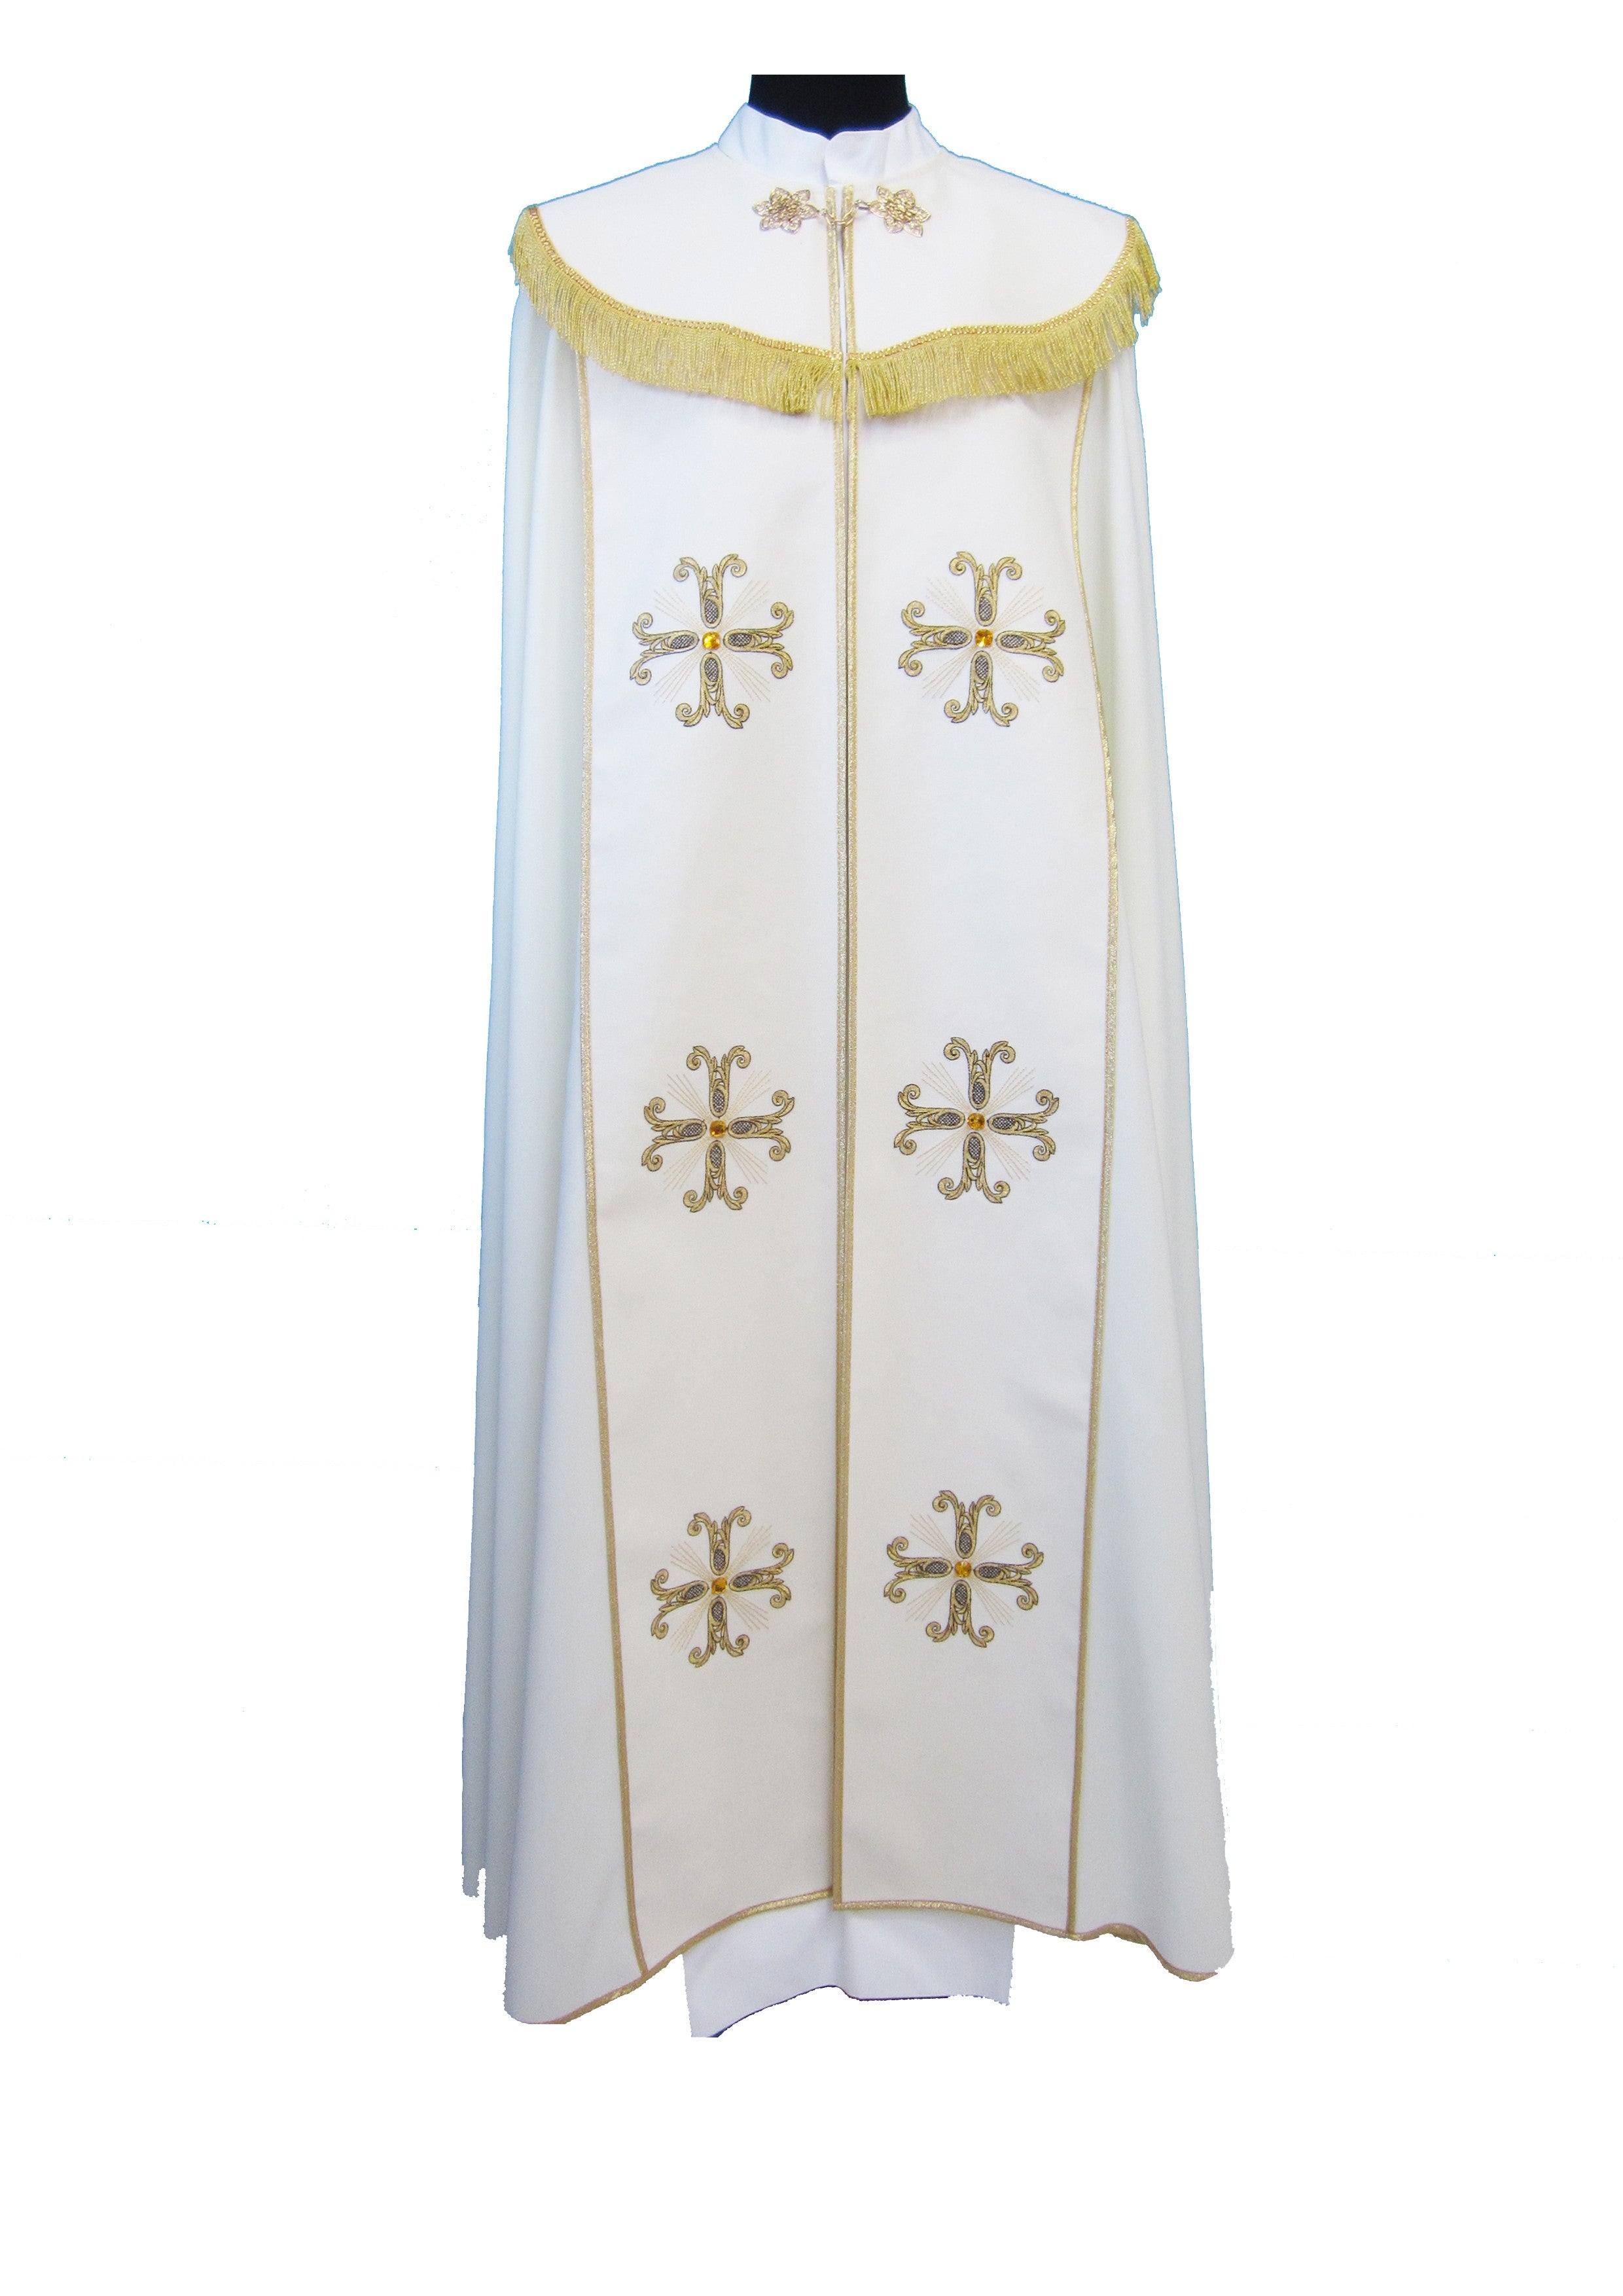 Piviale Sacro in poliestere con ricamo croci oro con Pietro ambrate